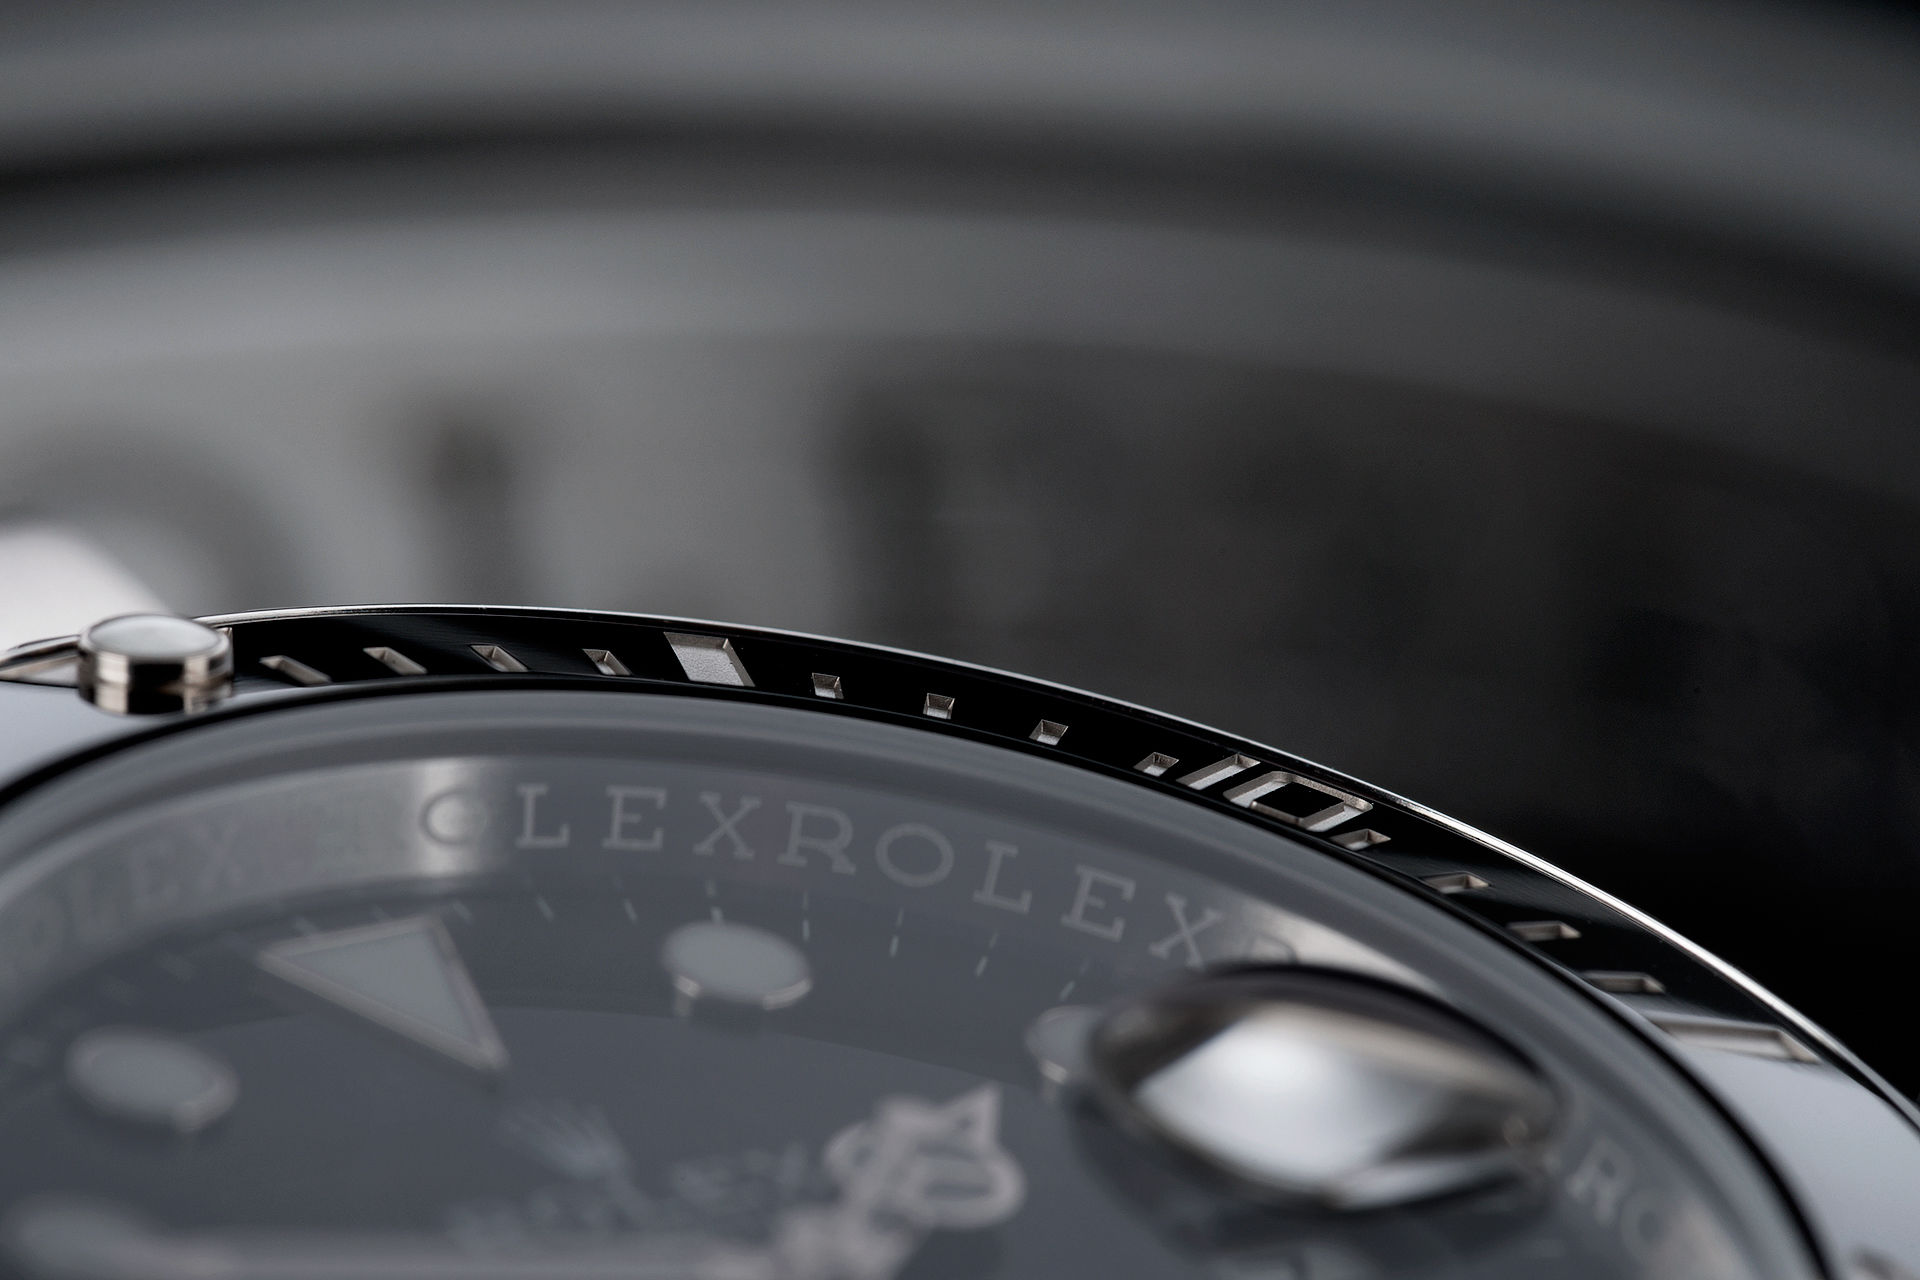 ref 116610LN | Brand New 5 Year Rolex Warranty  | Rolex Submariner Date